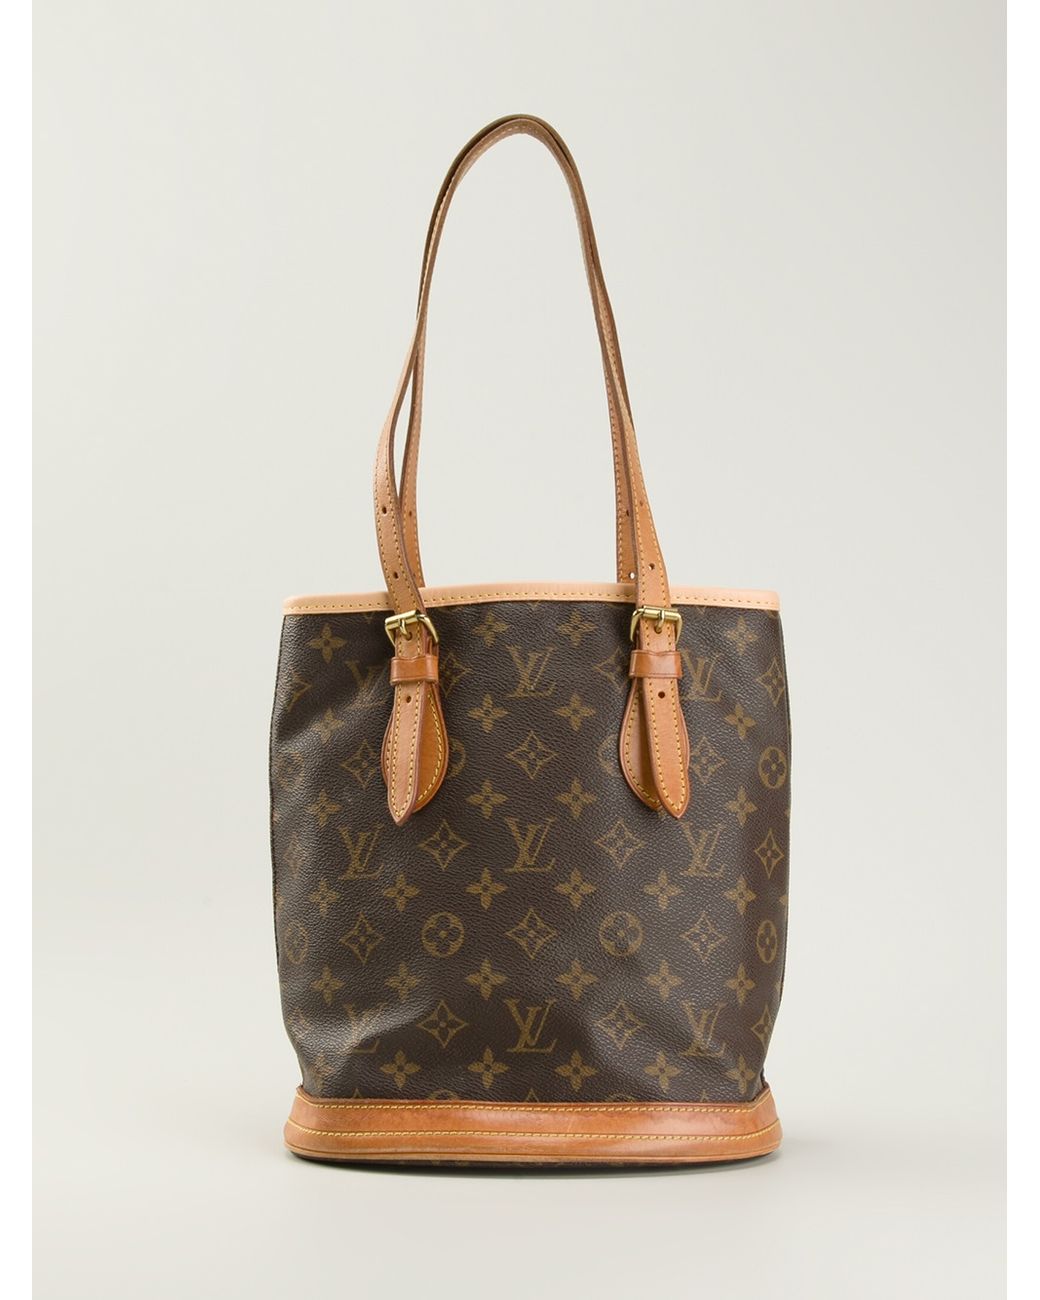 Preowned Authentic Louis Vuitton Monogram Canvas Petit Bucket Bag